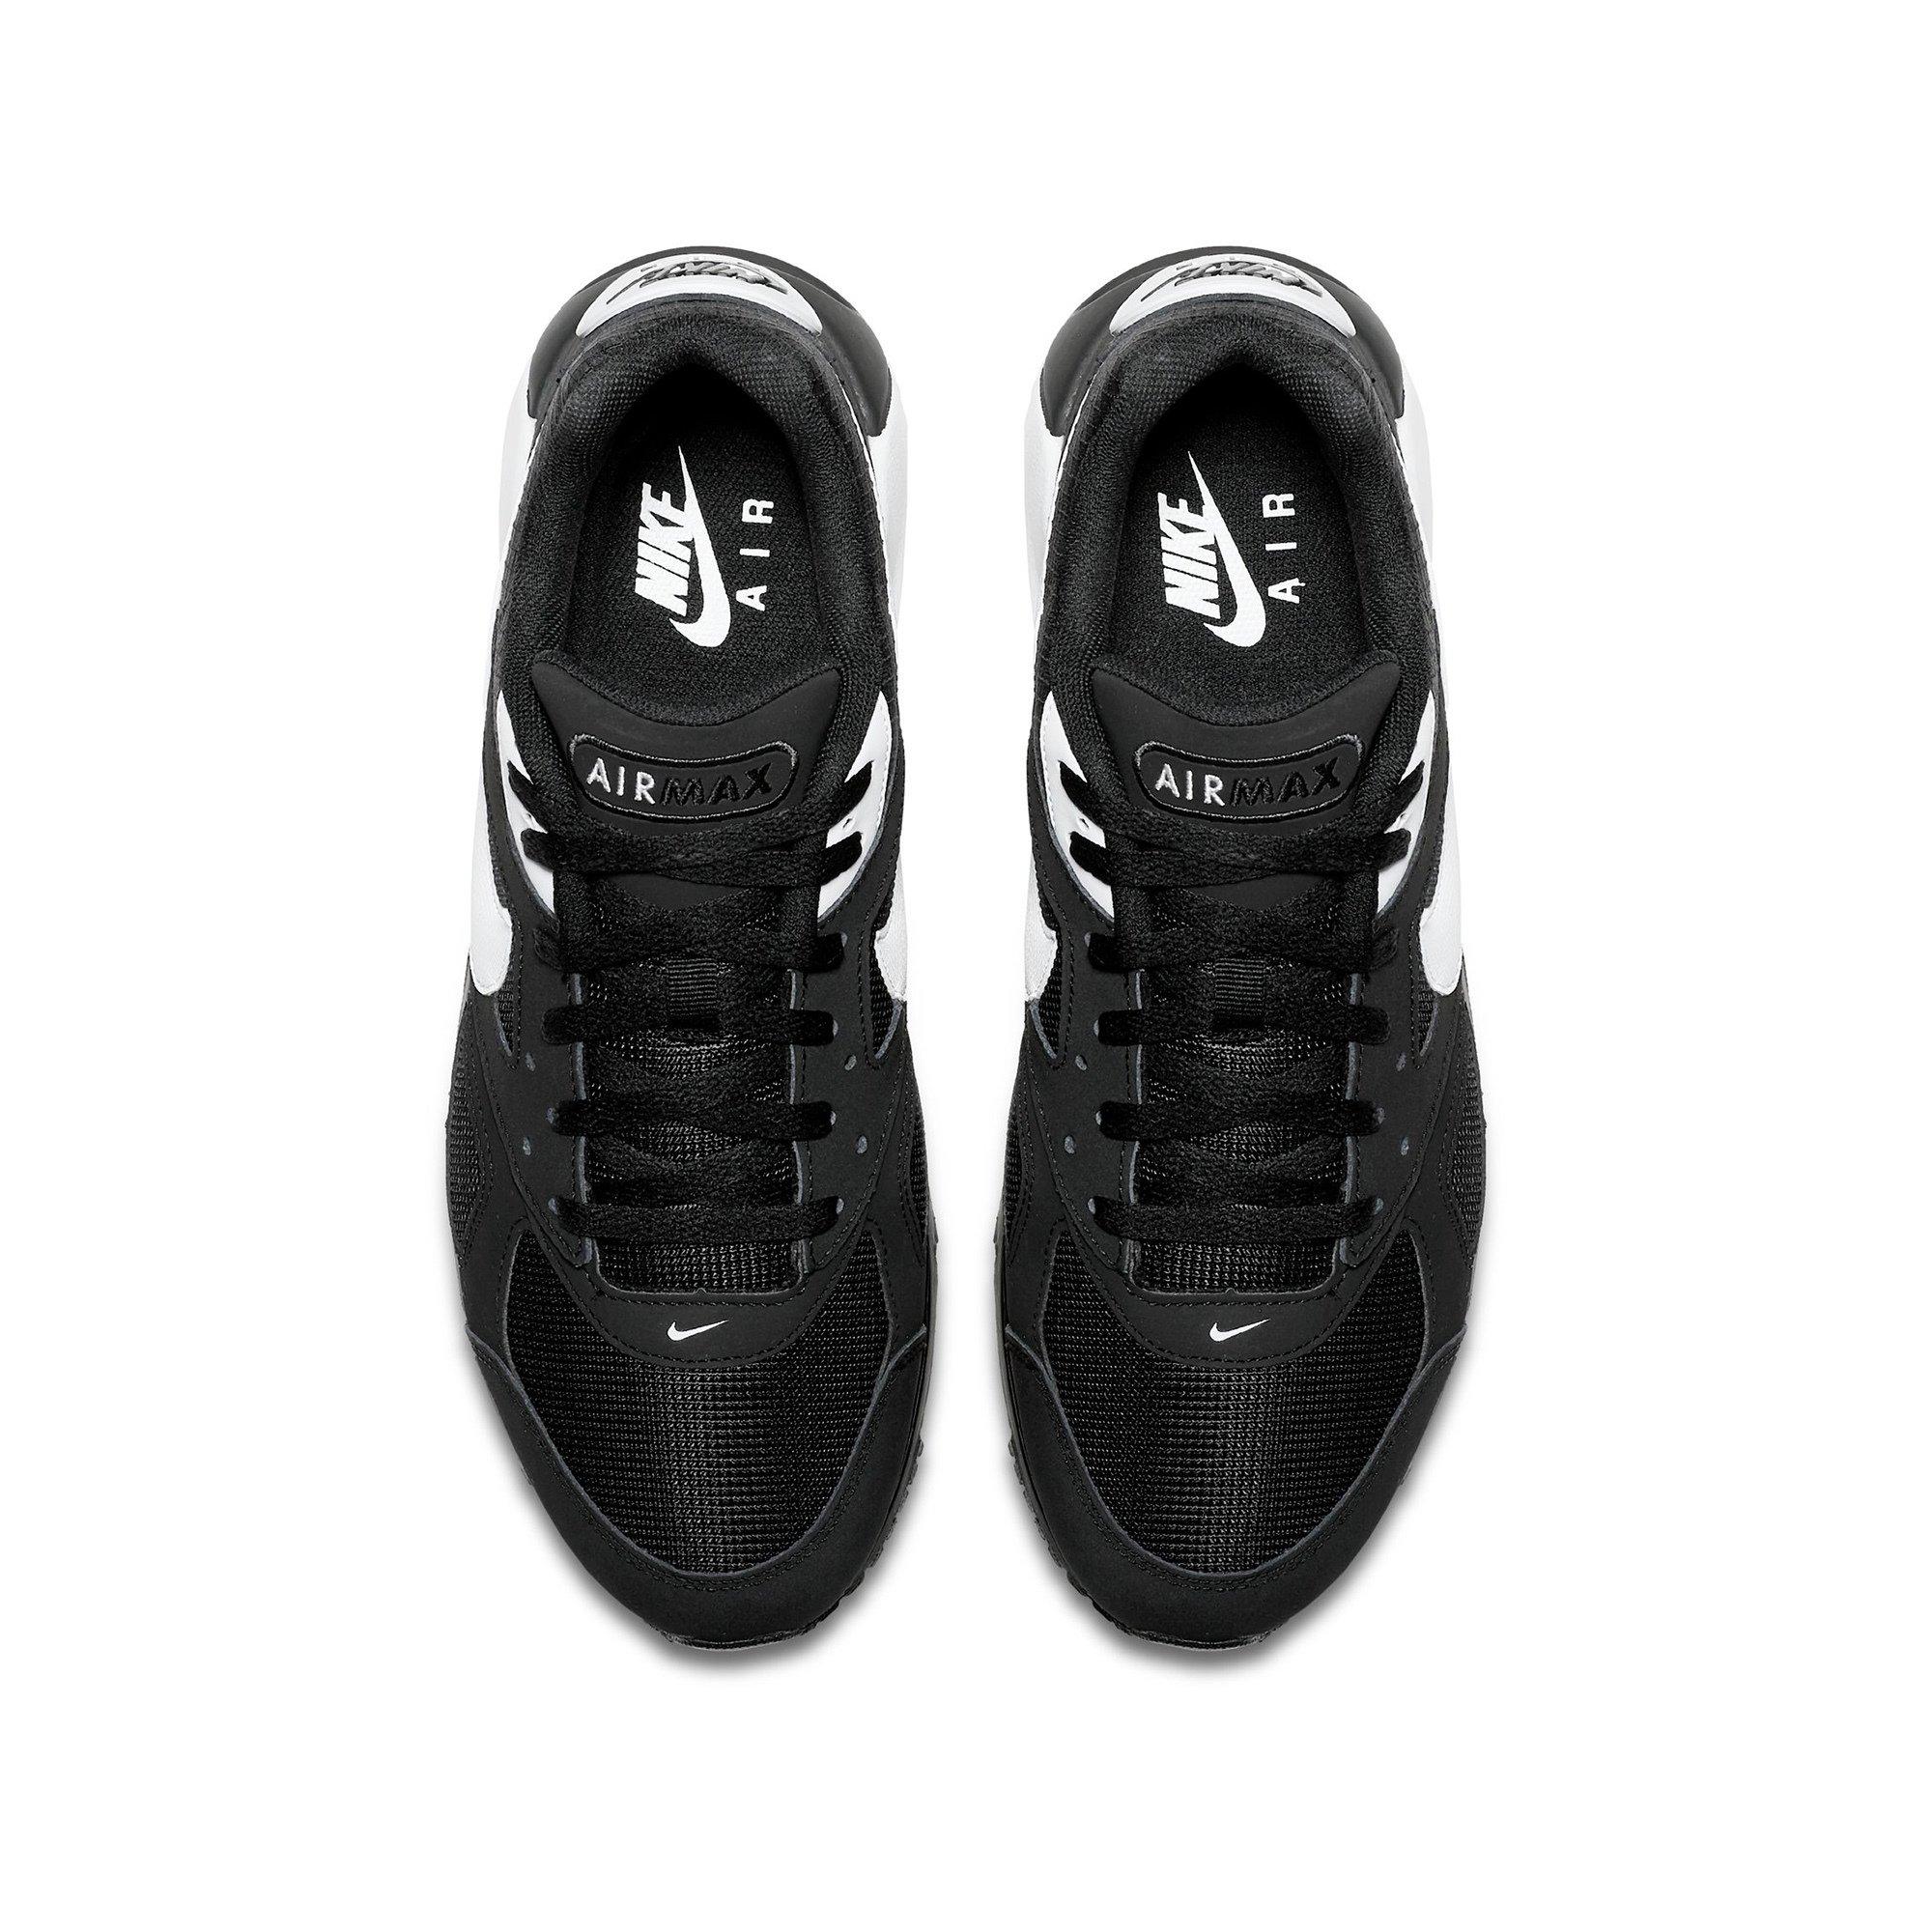 NIKE Men's Nike Air Max IVO Shoe Sneakers, Low Top 